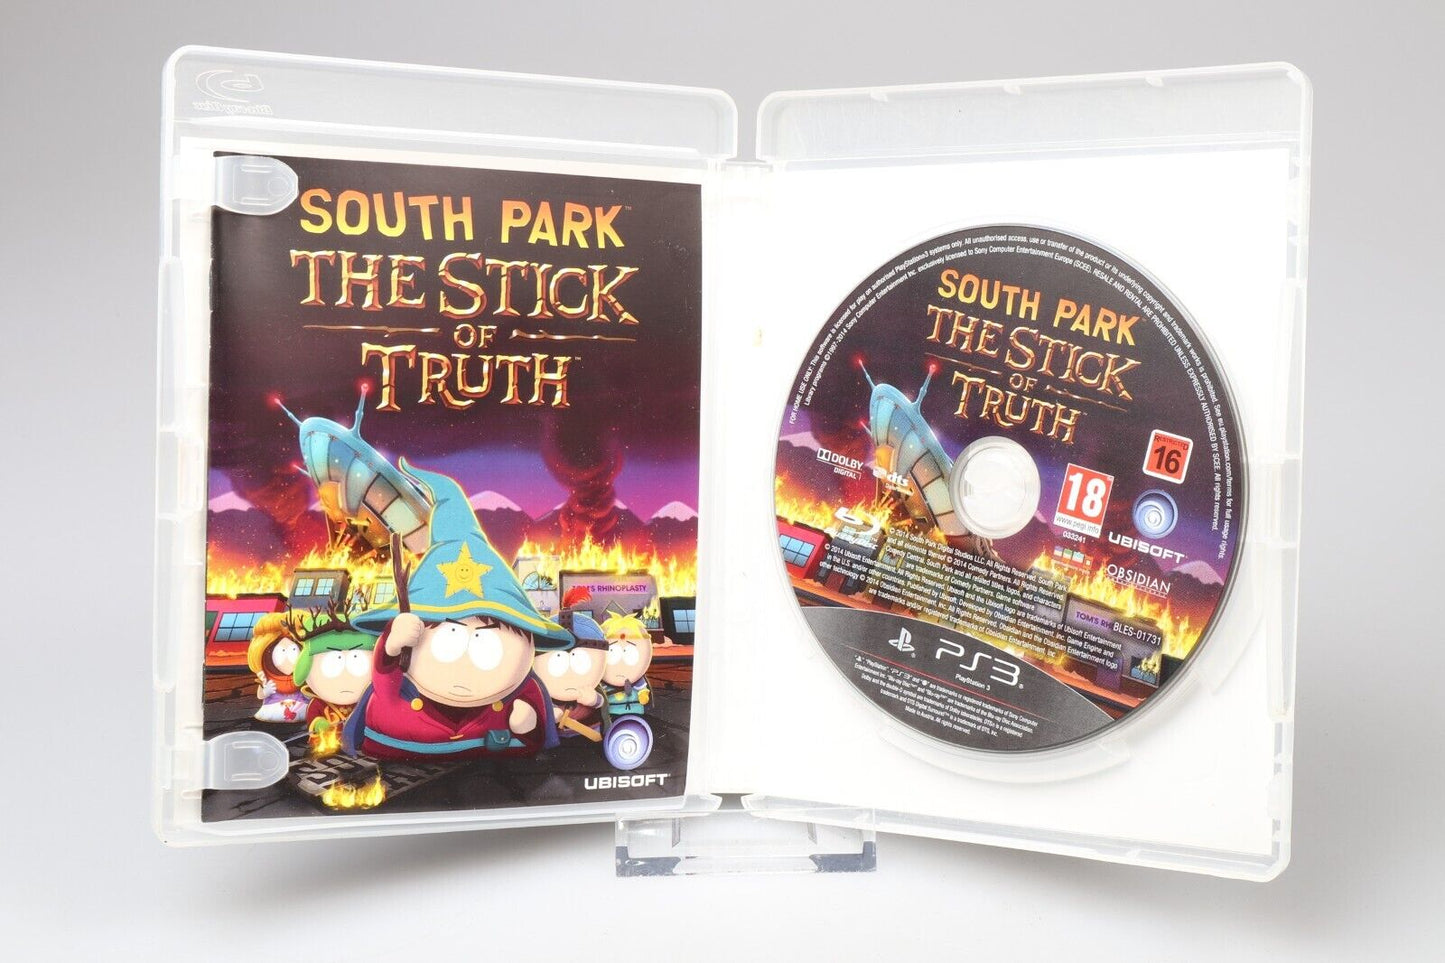 PS3 | South Park De stok der waarheid (PAL)(ENG) 